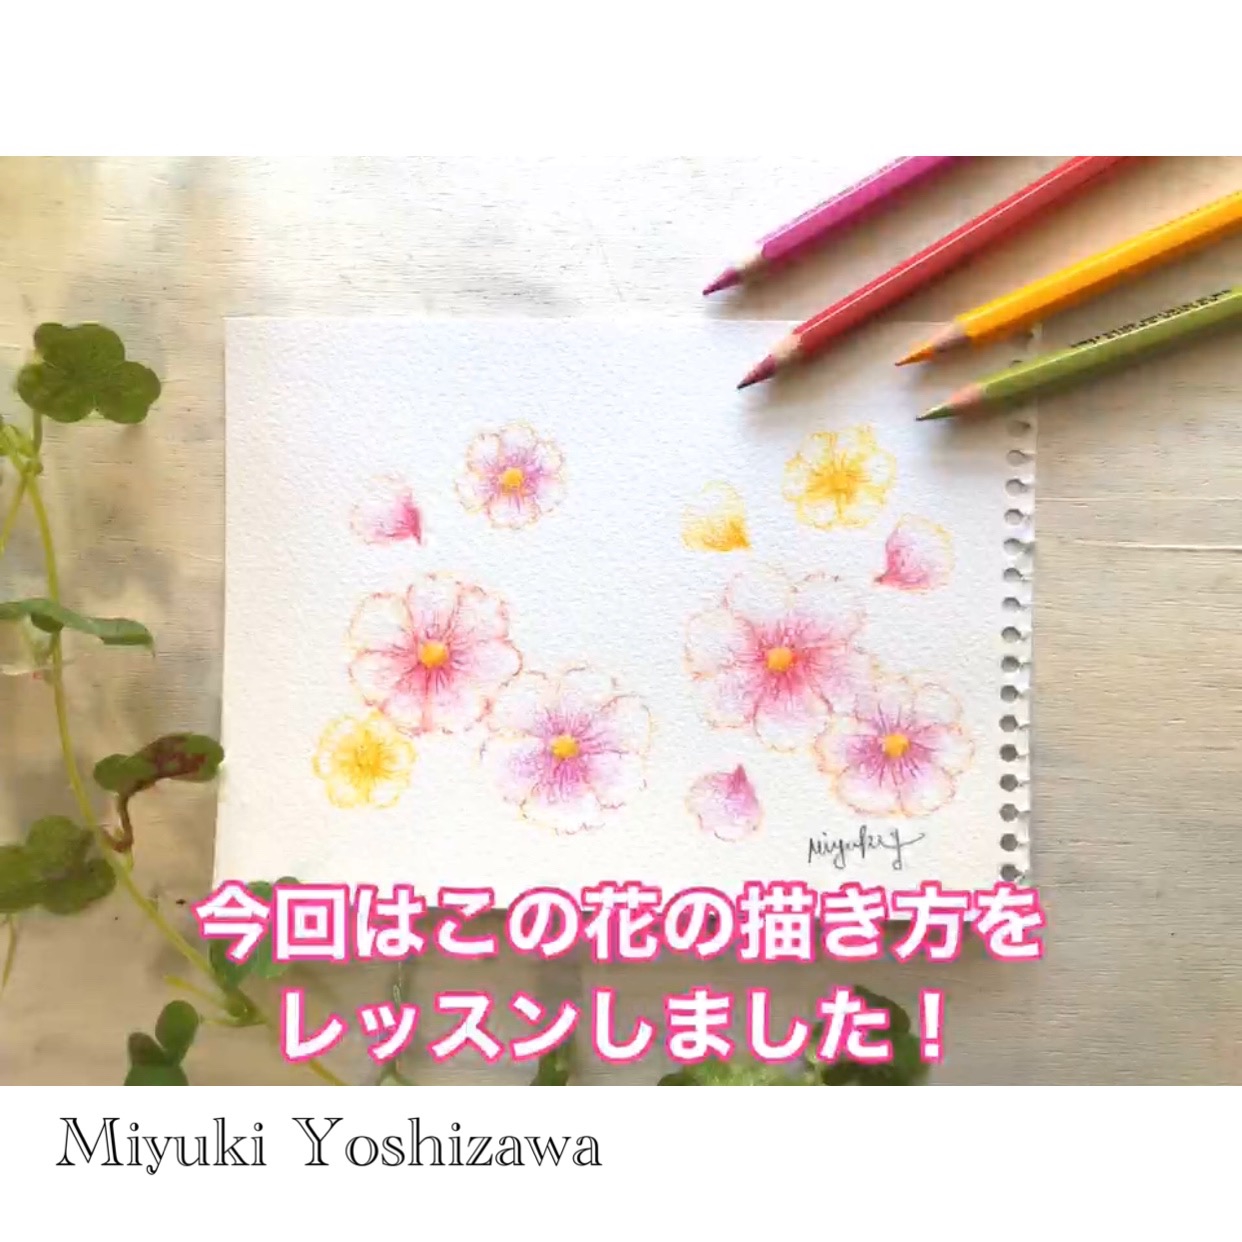 水彩色鉛筆レッスンオンライン展覧会 | Miyuki Yoshizawa